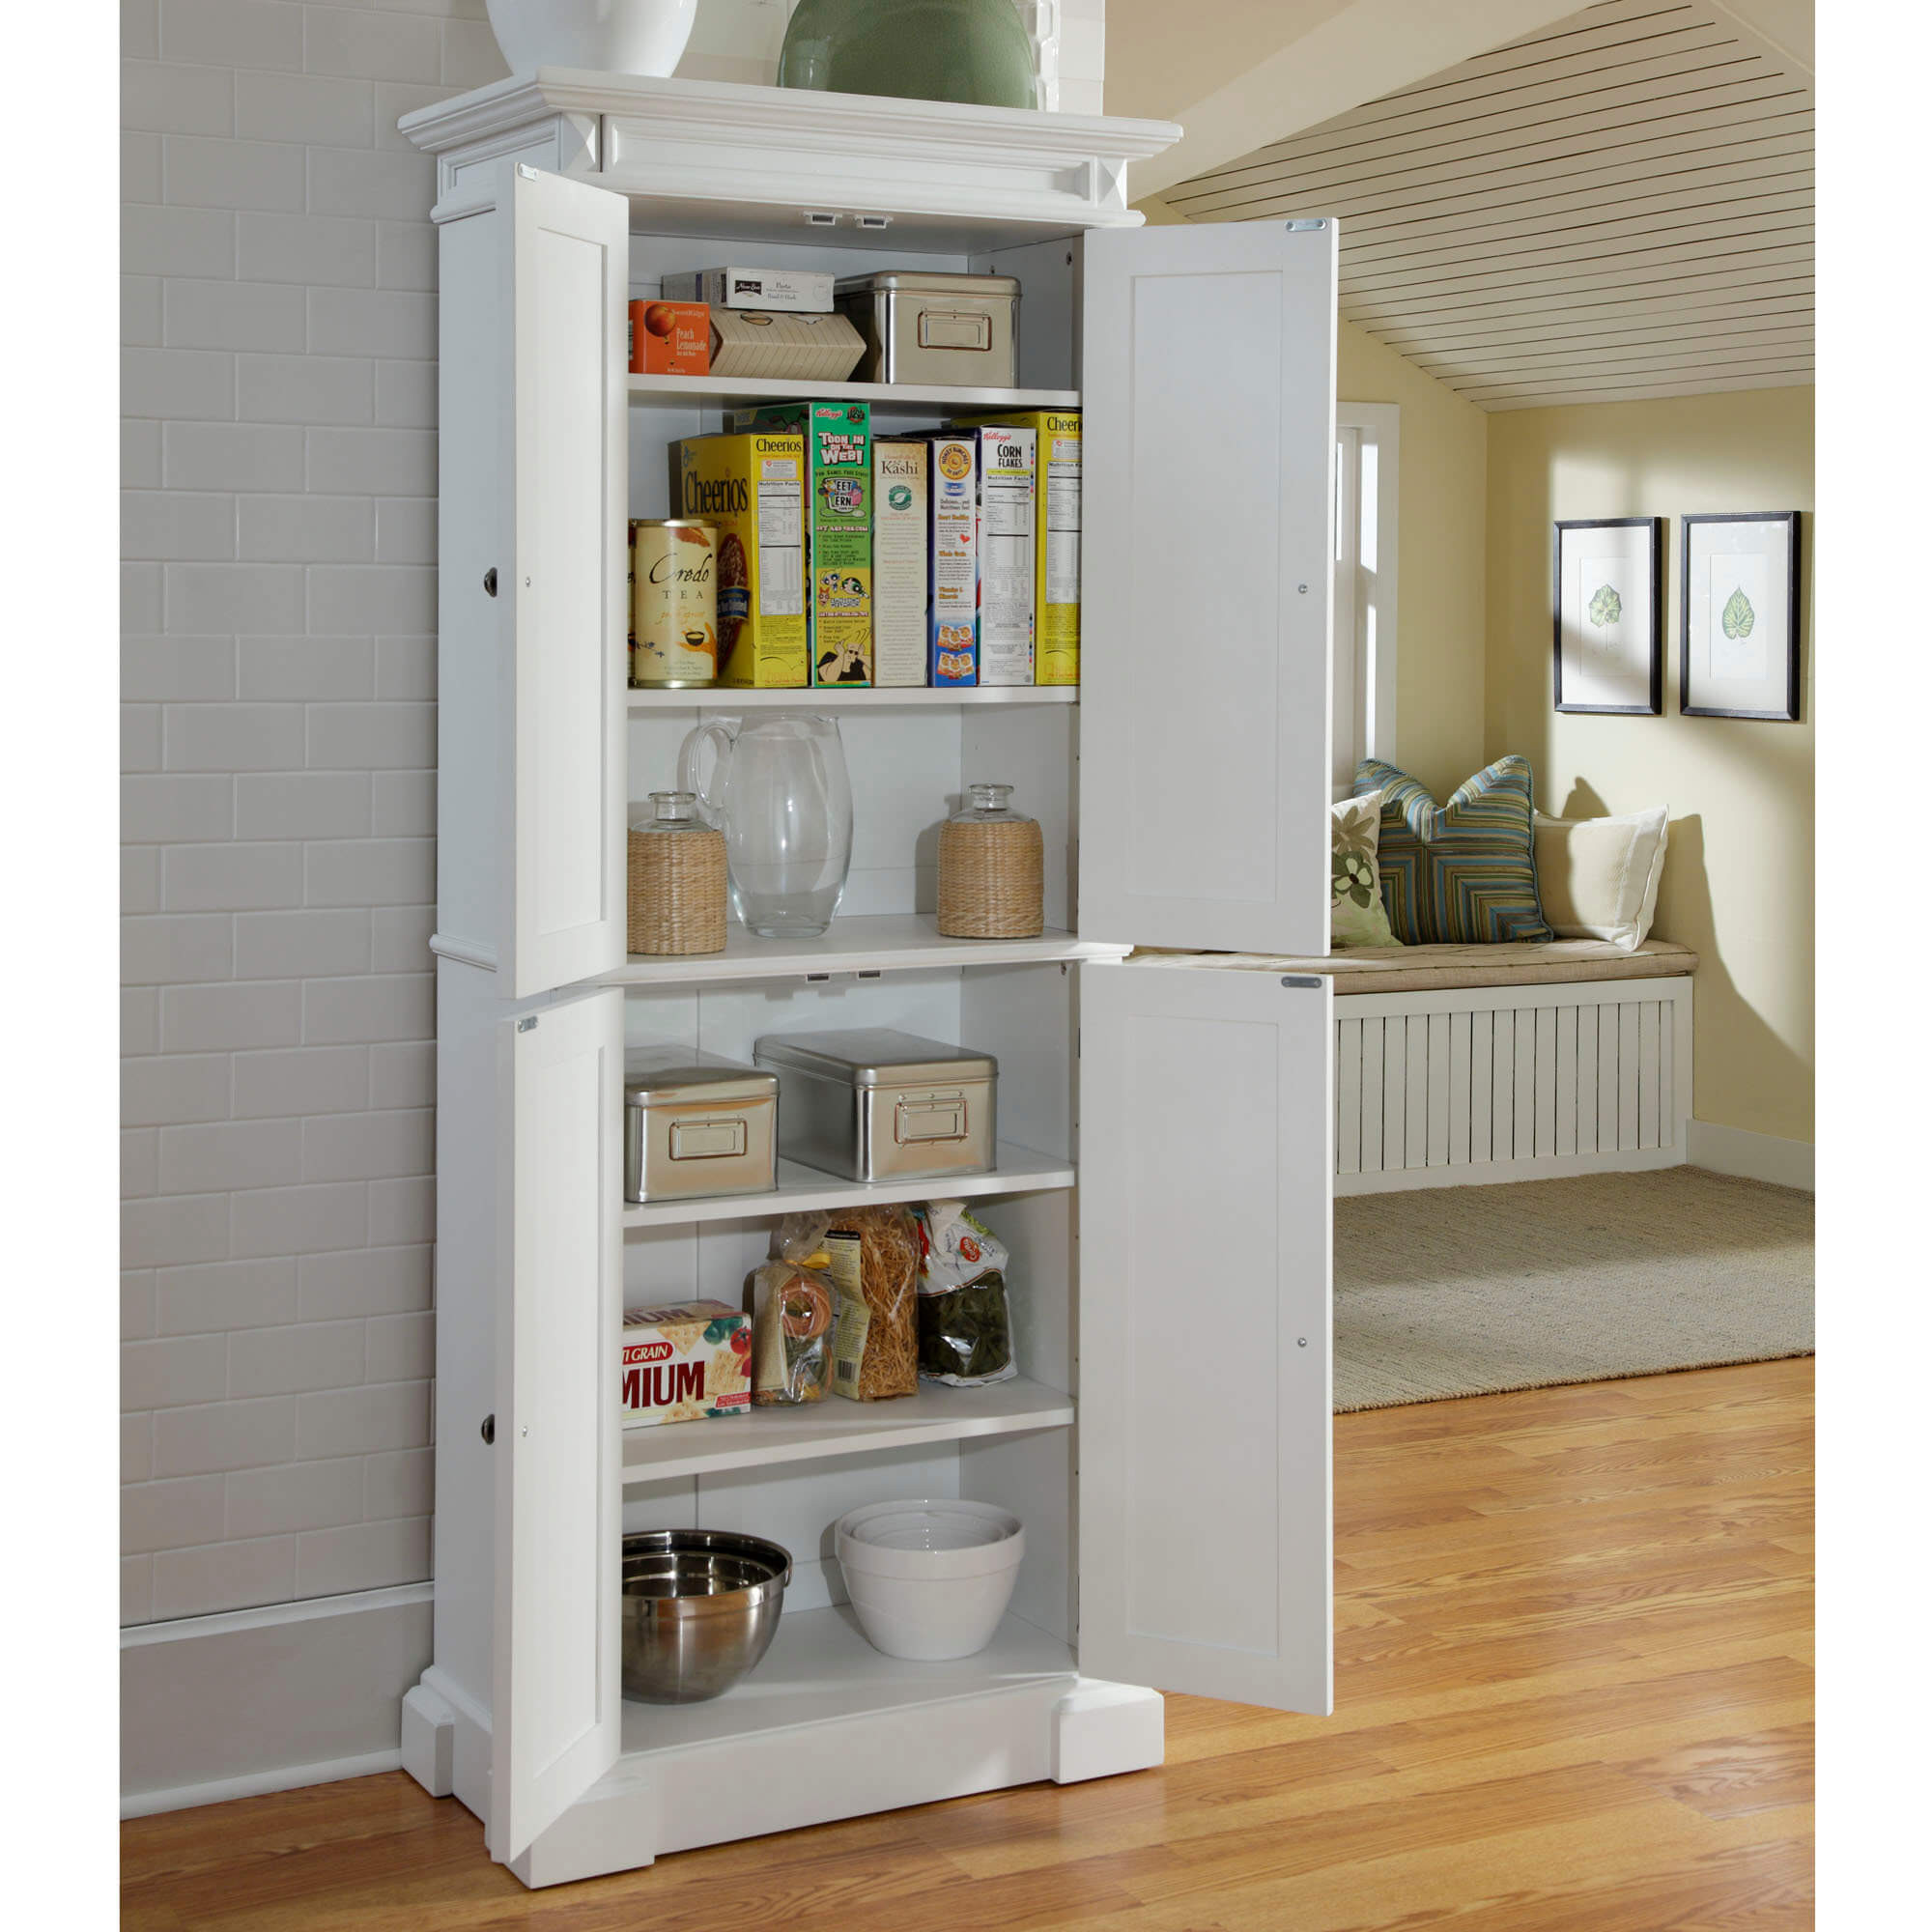 Ikea Kitchen Storage
 Kitchen Pantry Cabinet Installation Guide TheyDesign